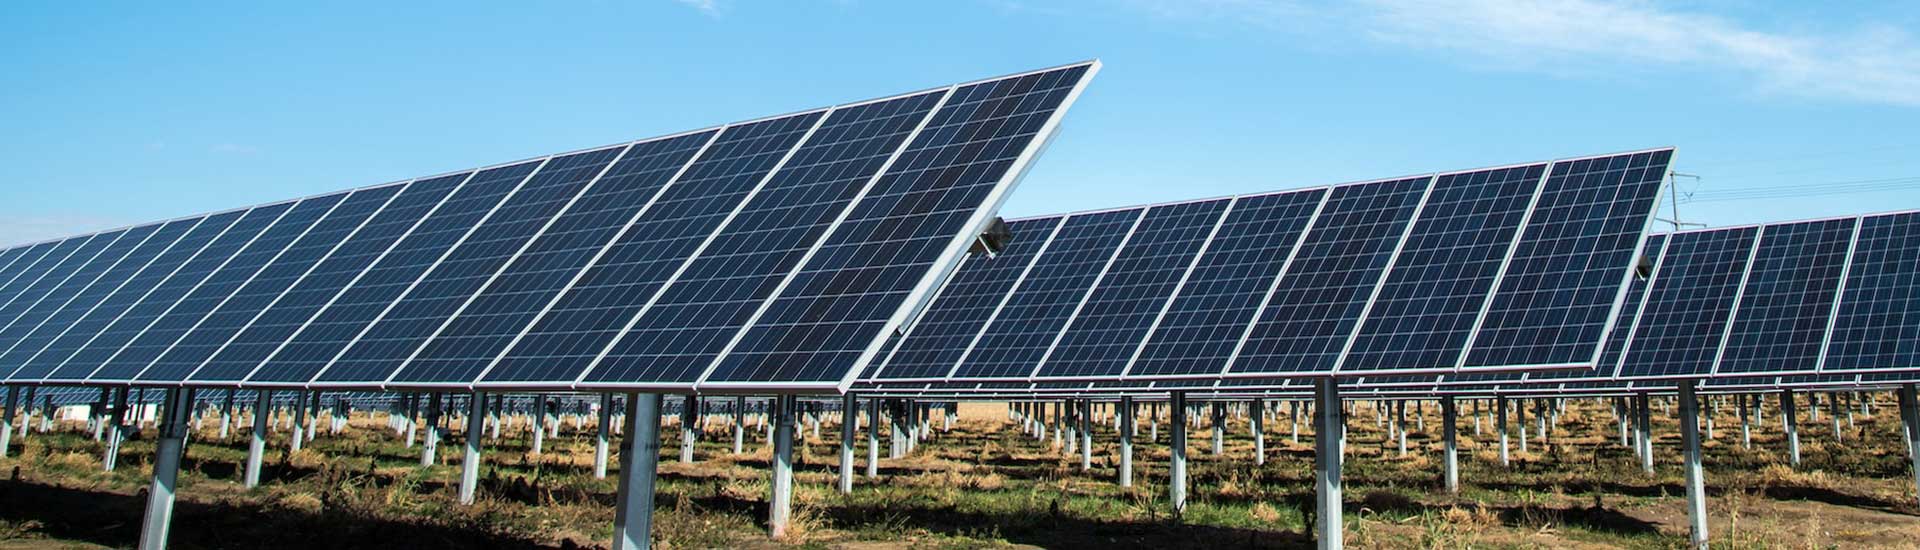 Solar farm security